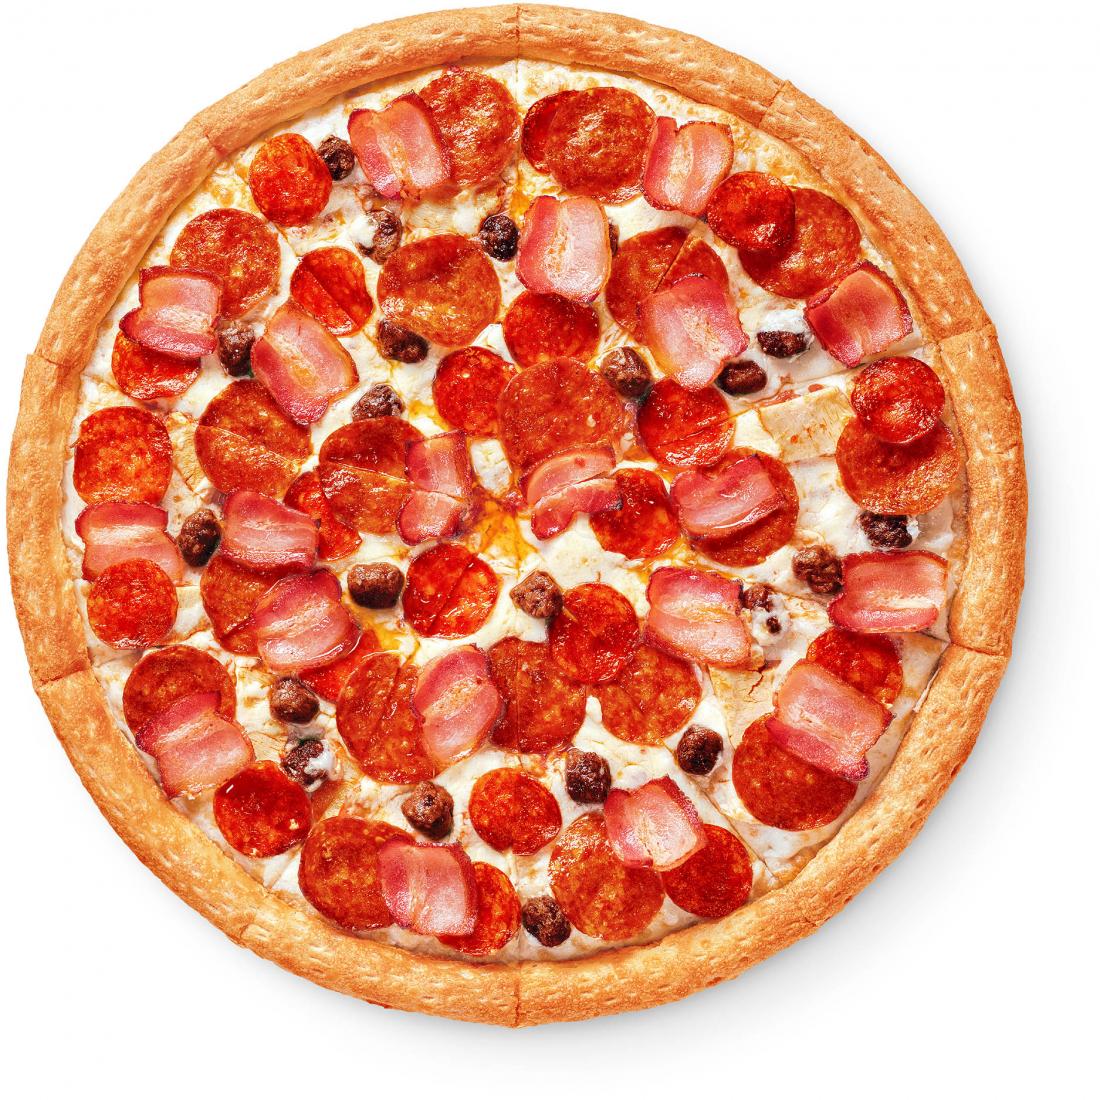 состав пиццы пепперони в додо фото 111